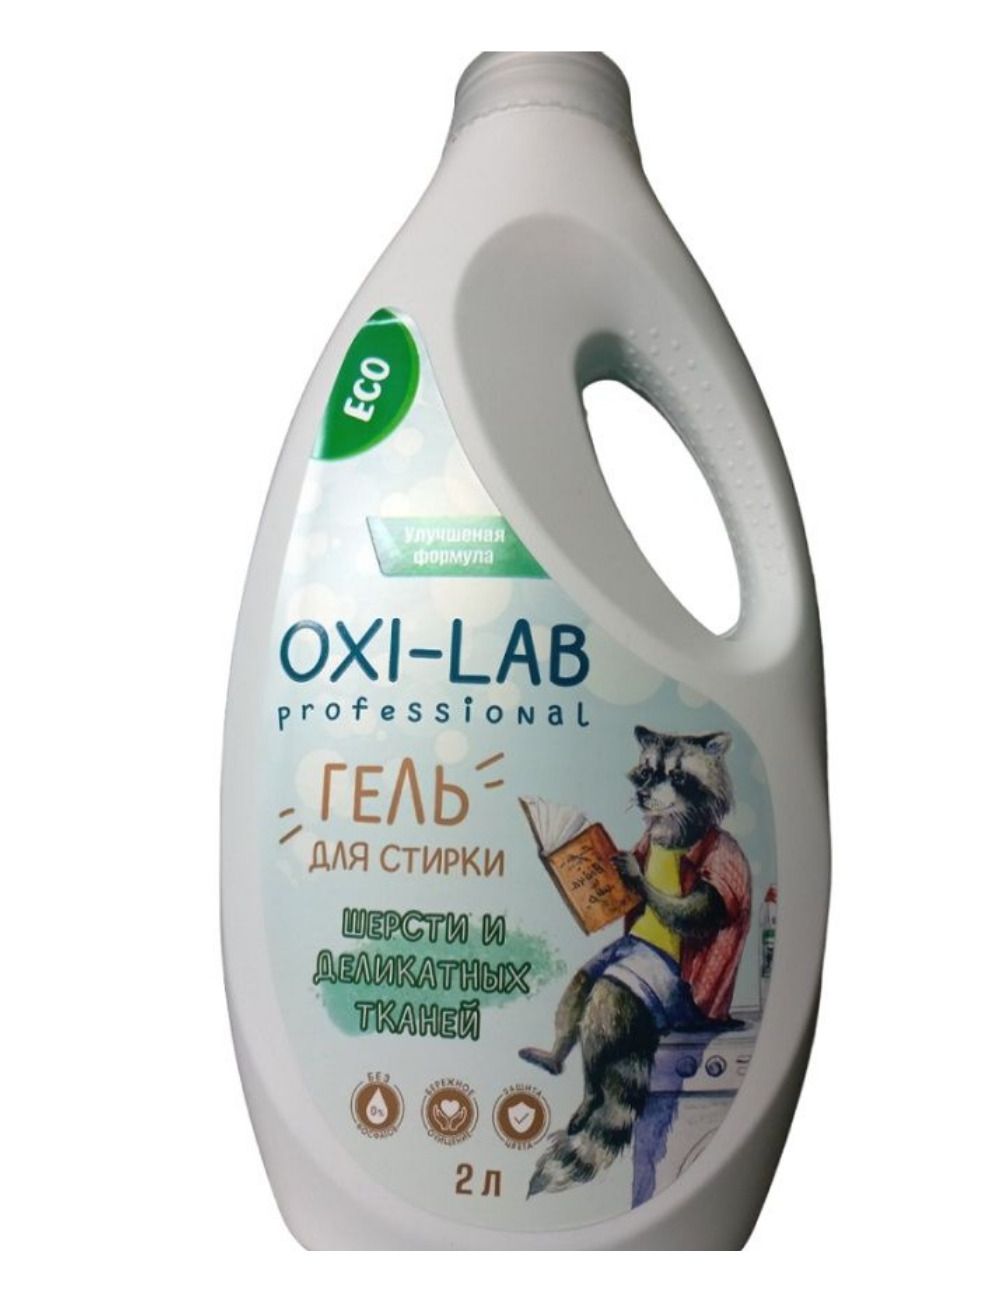 Gel laboratory. Oxi Lab гель для стирки. Гель для стирки Oxi-Lab 5 l. Гель для стирки Oxi Universal 1500. Oxi Lab professional гель для мытья.